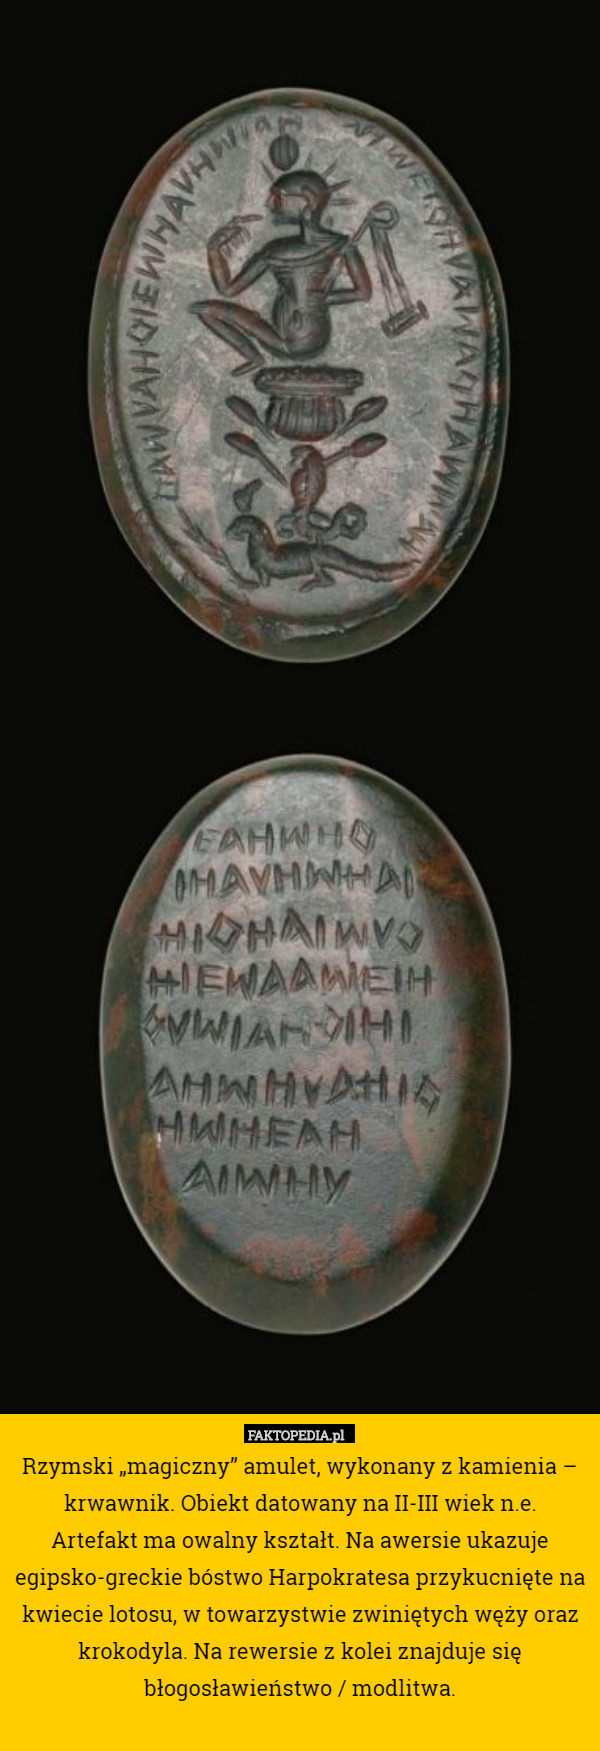 Rzymski „magiczny” amulet, wykonany z kamienia – krwawnik. Obiekt datowany